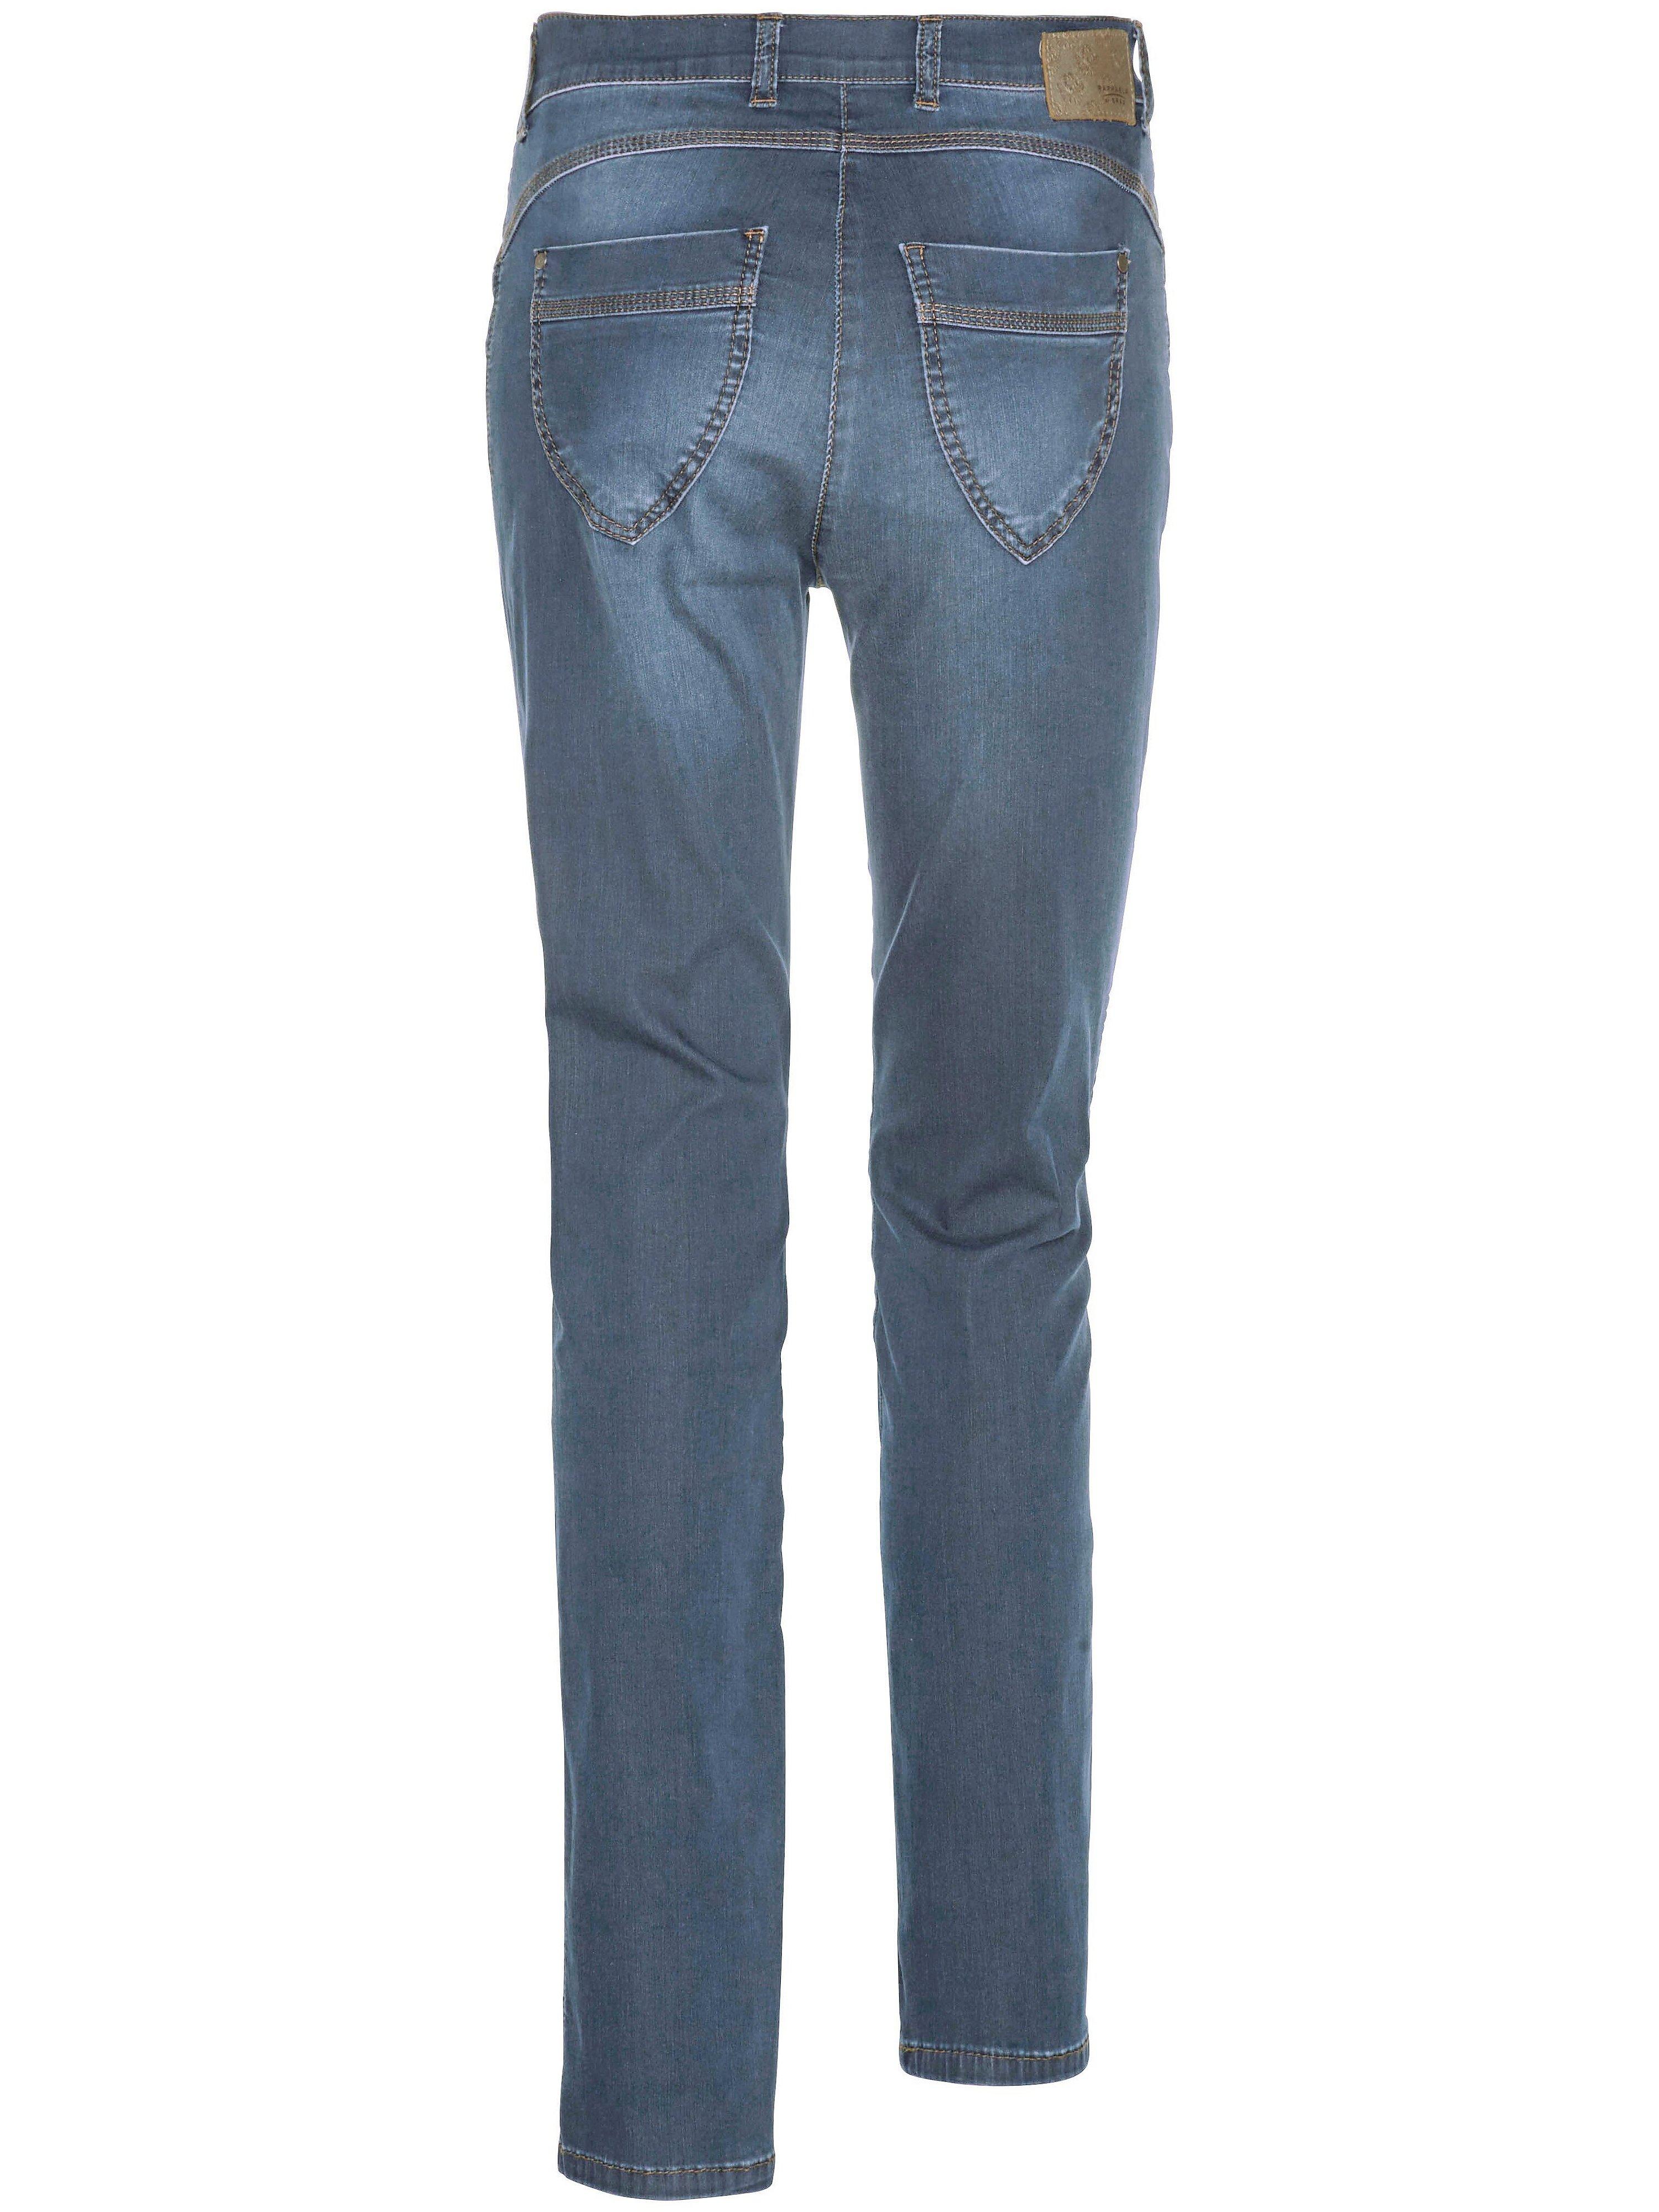 RAPHAELA by BRAX Proform s super slim-zauber-jeans modell lea in Blau |  Lyst DE